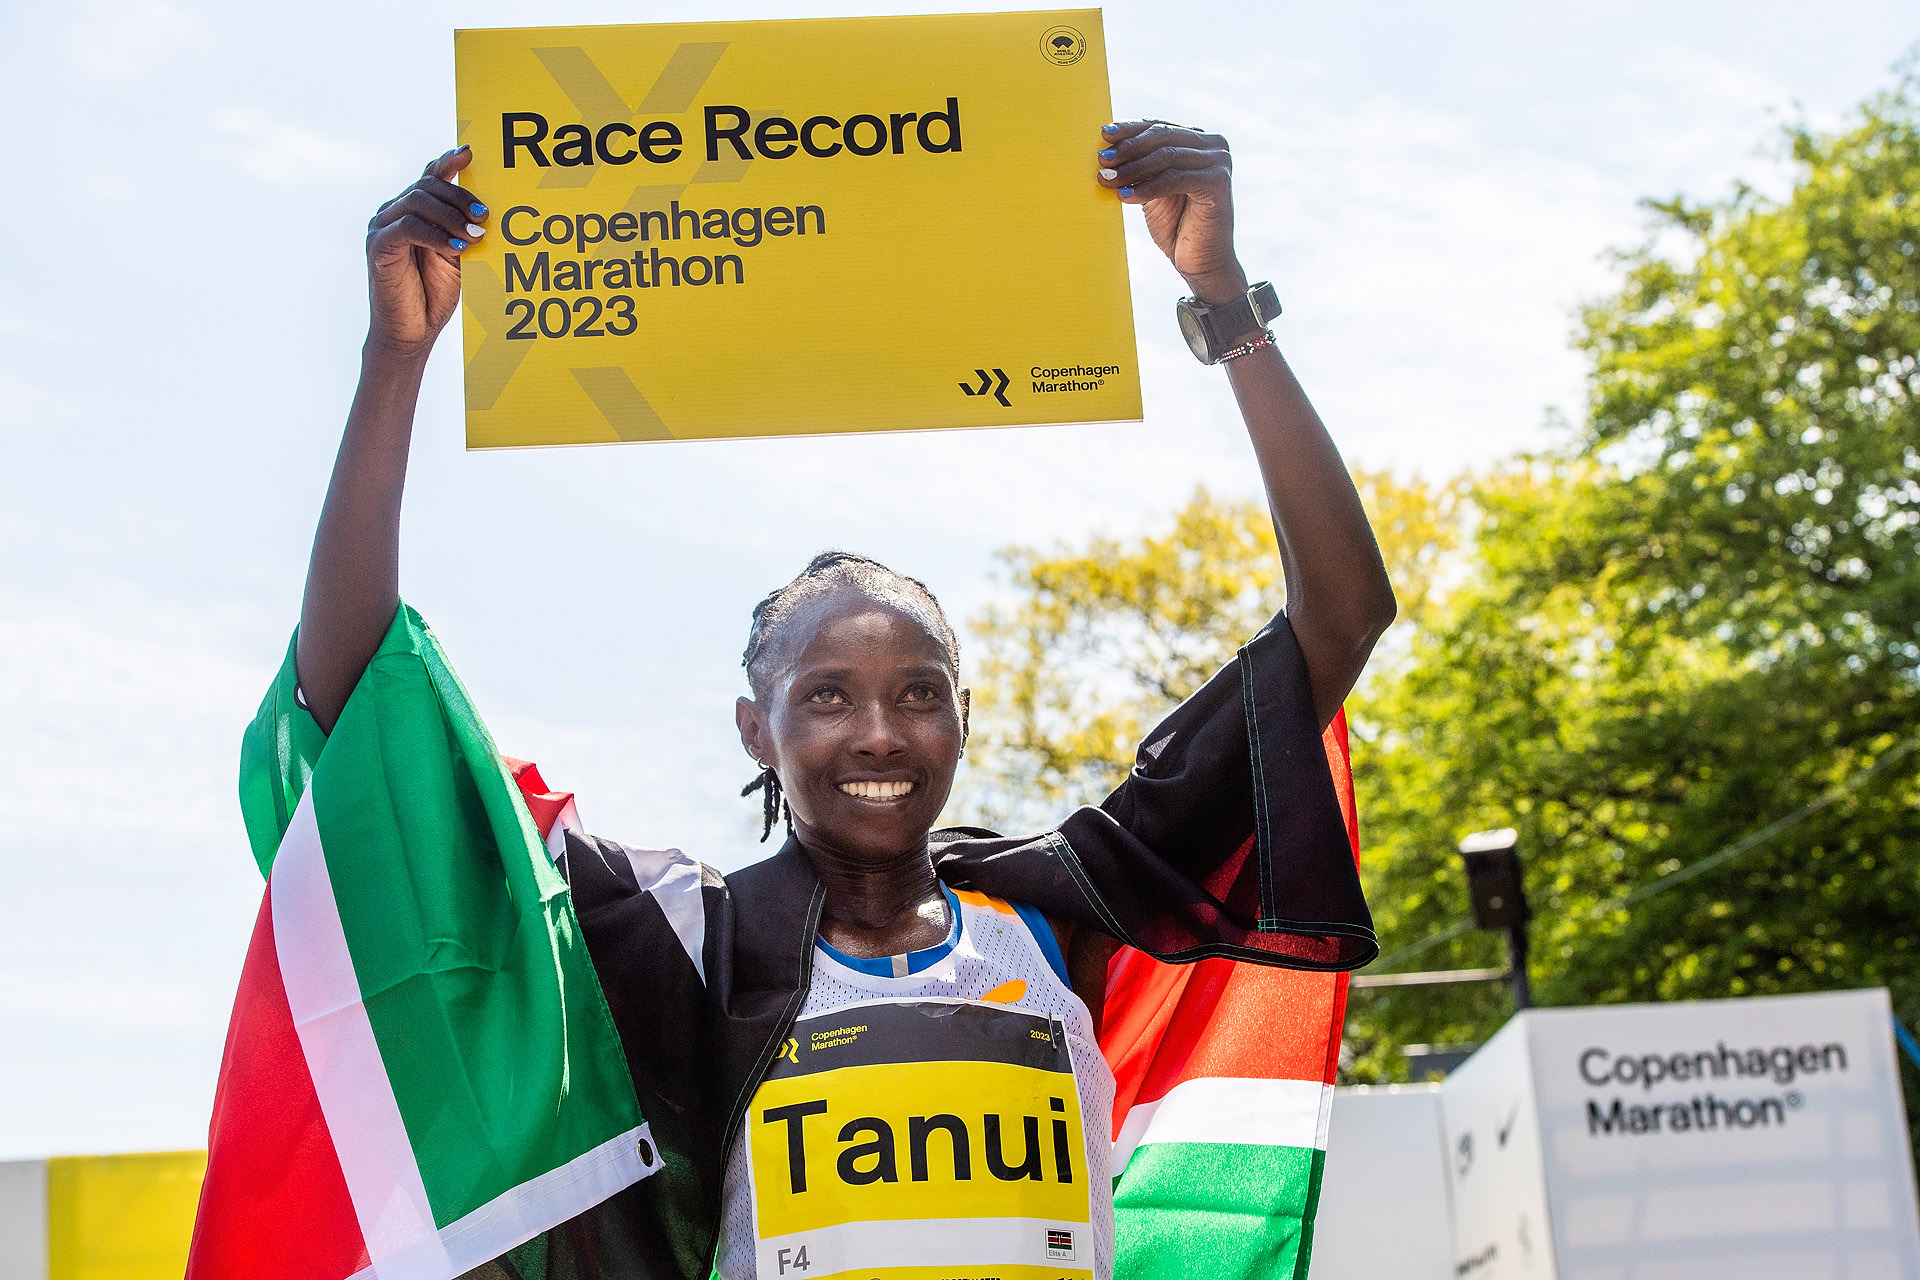 Maraton_rekord_kvinner_Tanui_nedskalert.jpg